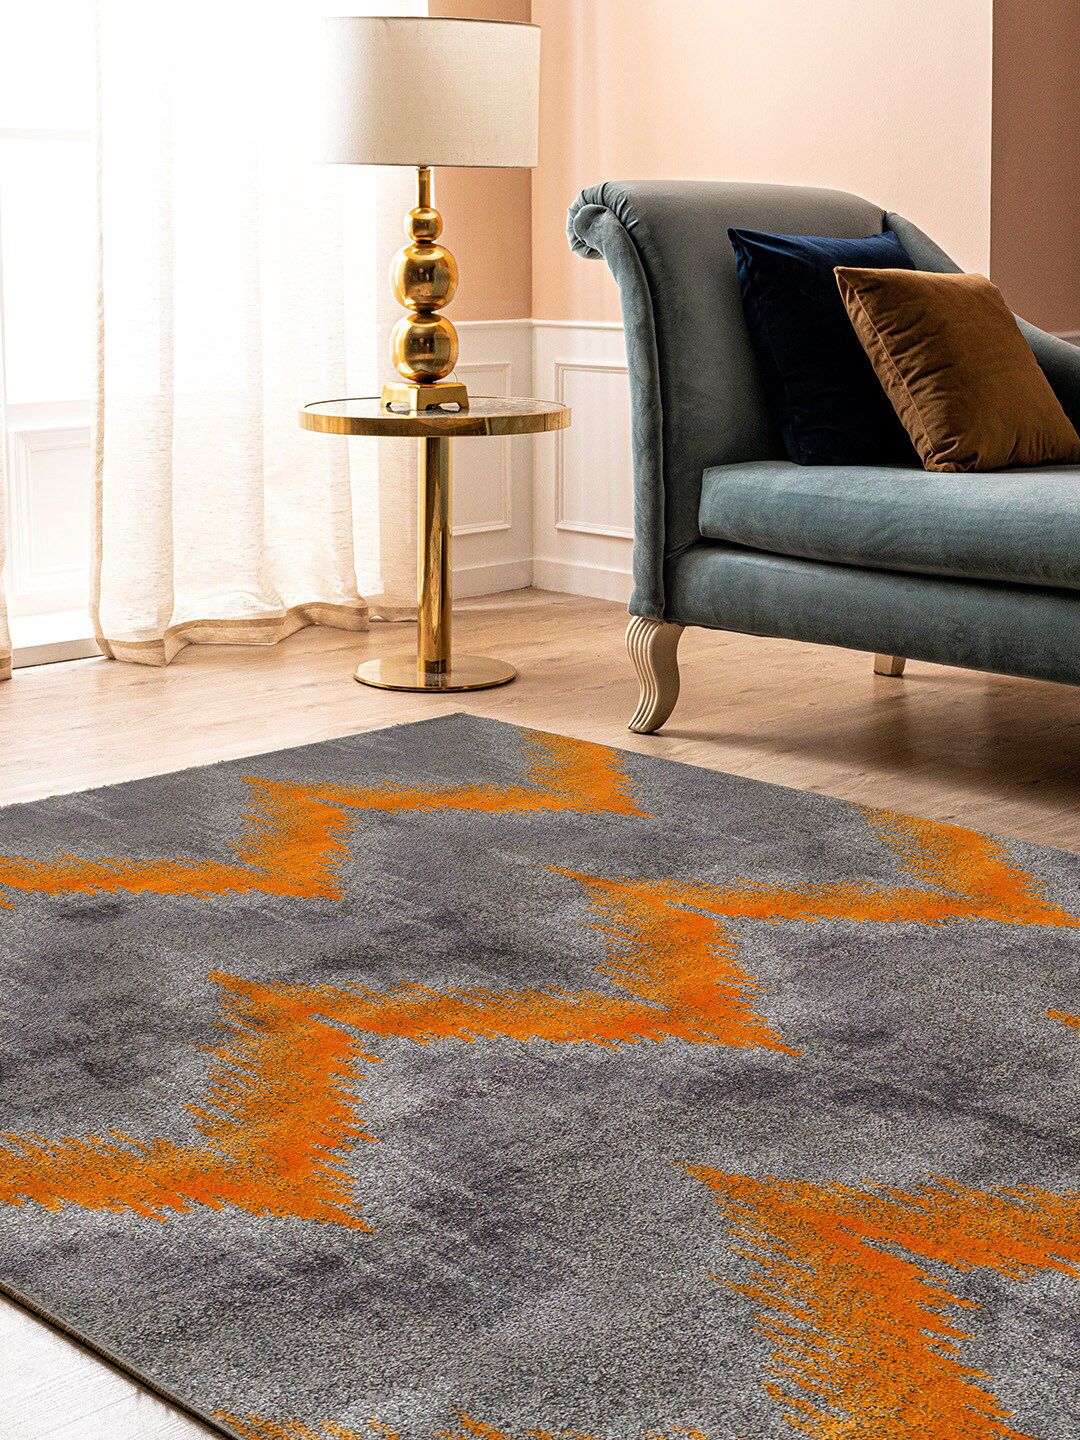 DDecor Grey & Orange Striped Floor Carpet Price in India